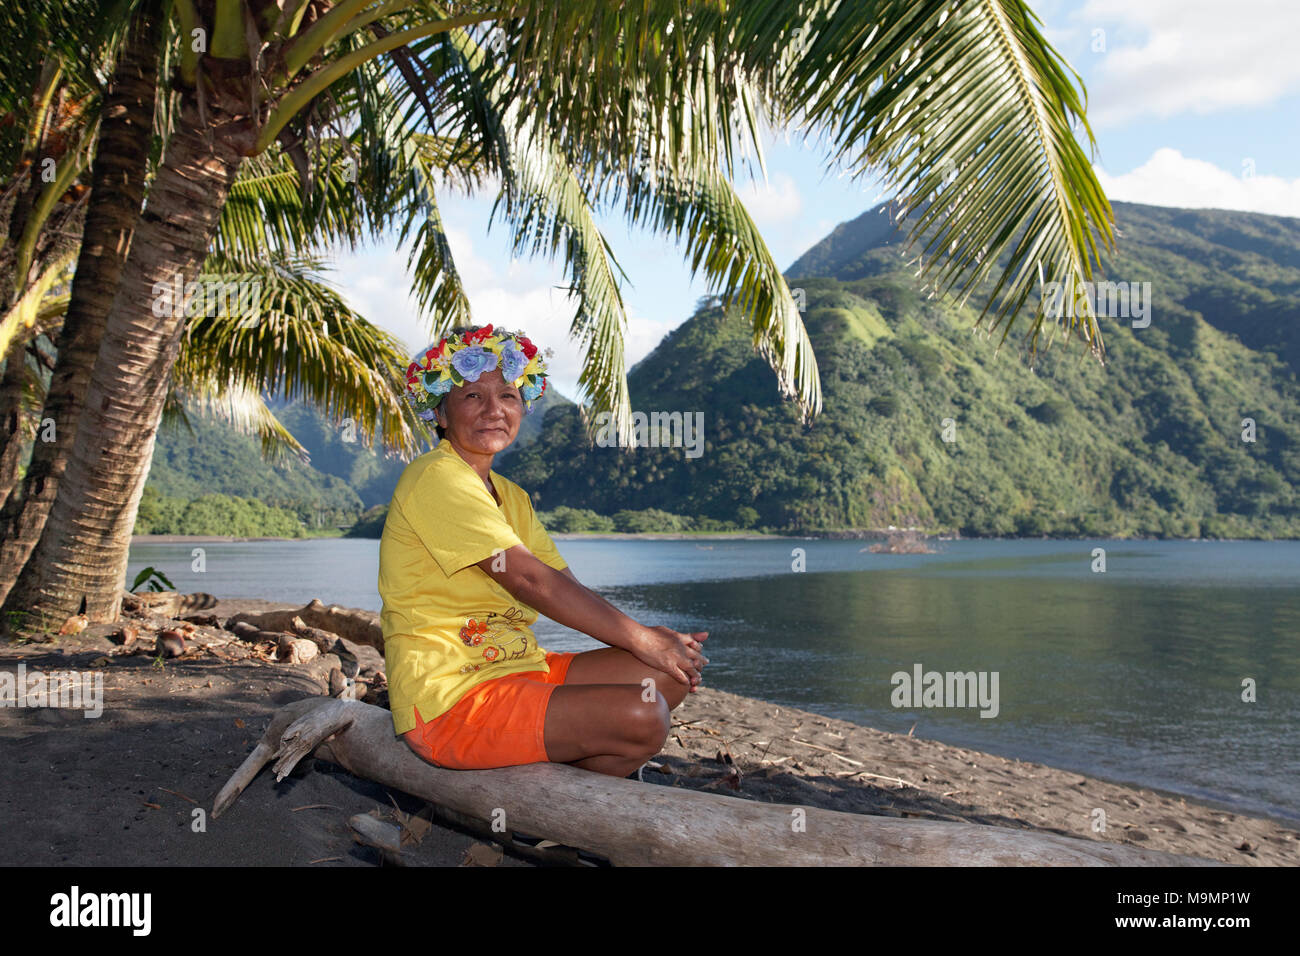 Anciana con corona de flores sentado bajo las palmeras en el tronco del árbol, cerca de la costa Taurita, Tahití Iti, las islas de la sociedad Foto de stock